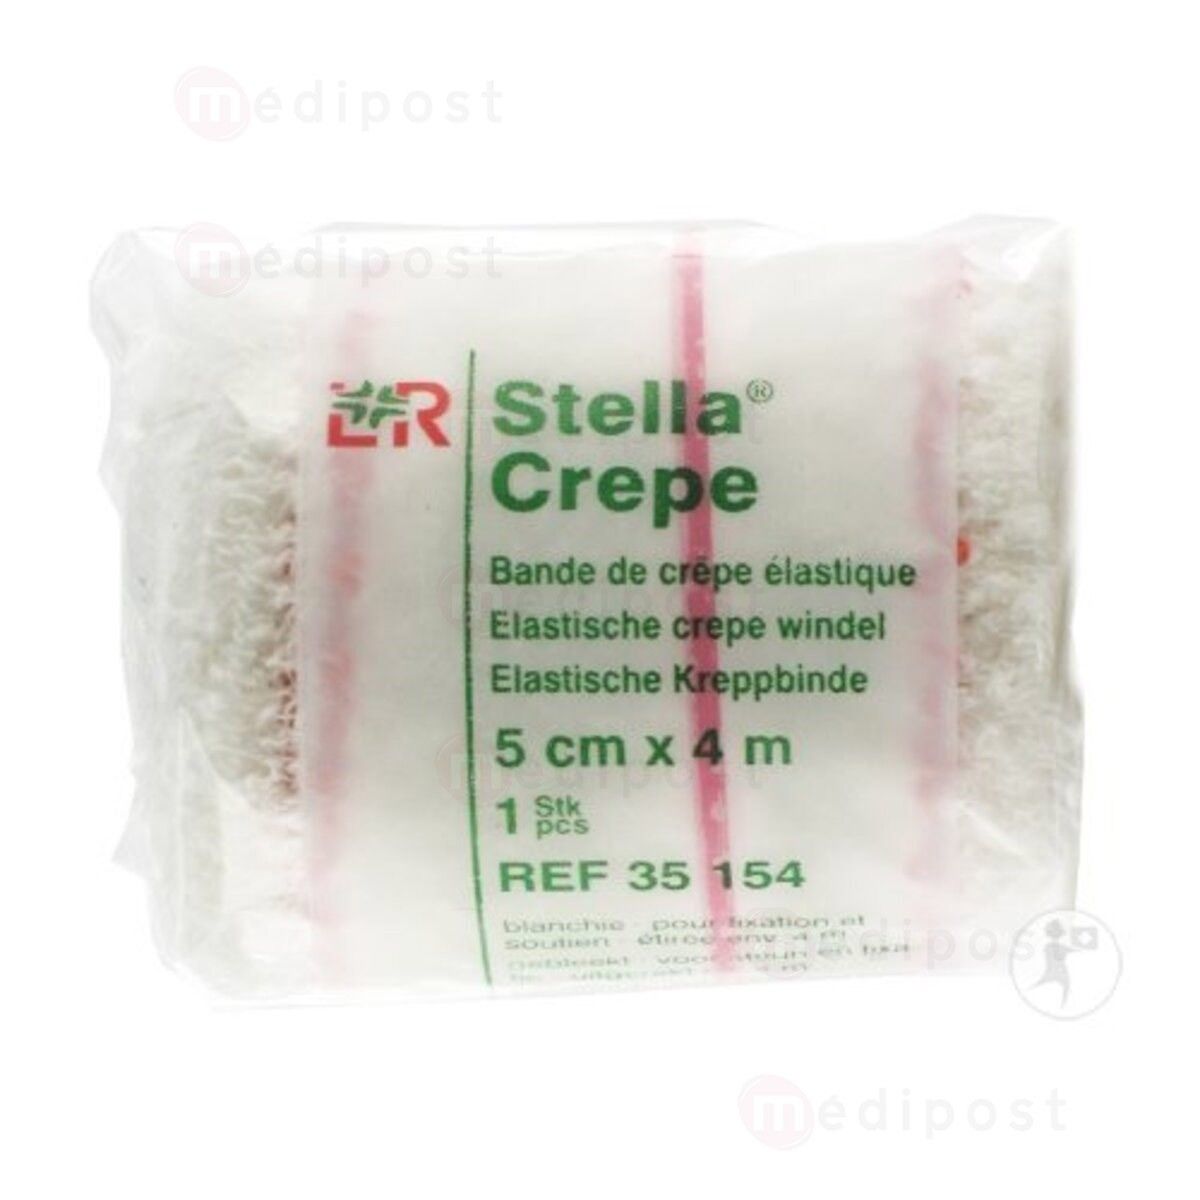 Stella® Crepe Bande de crêpe élastique 10 cm x 4 m 1 pc(s